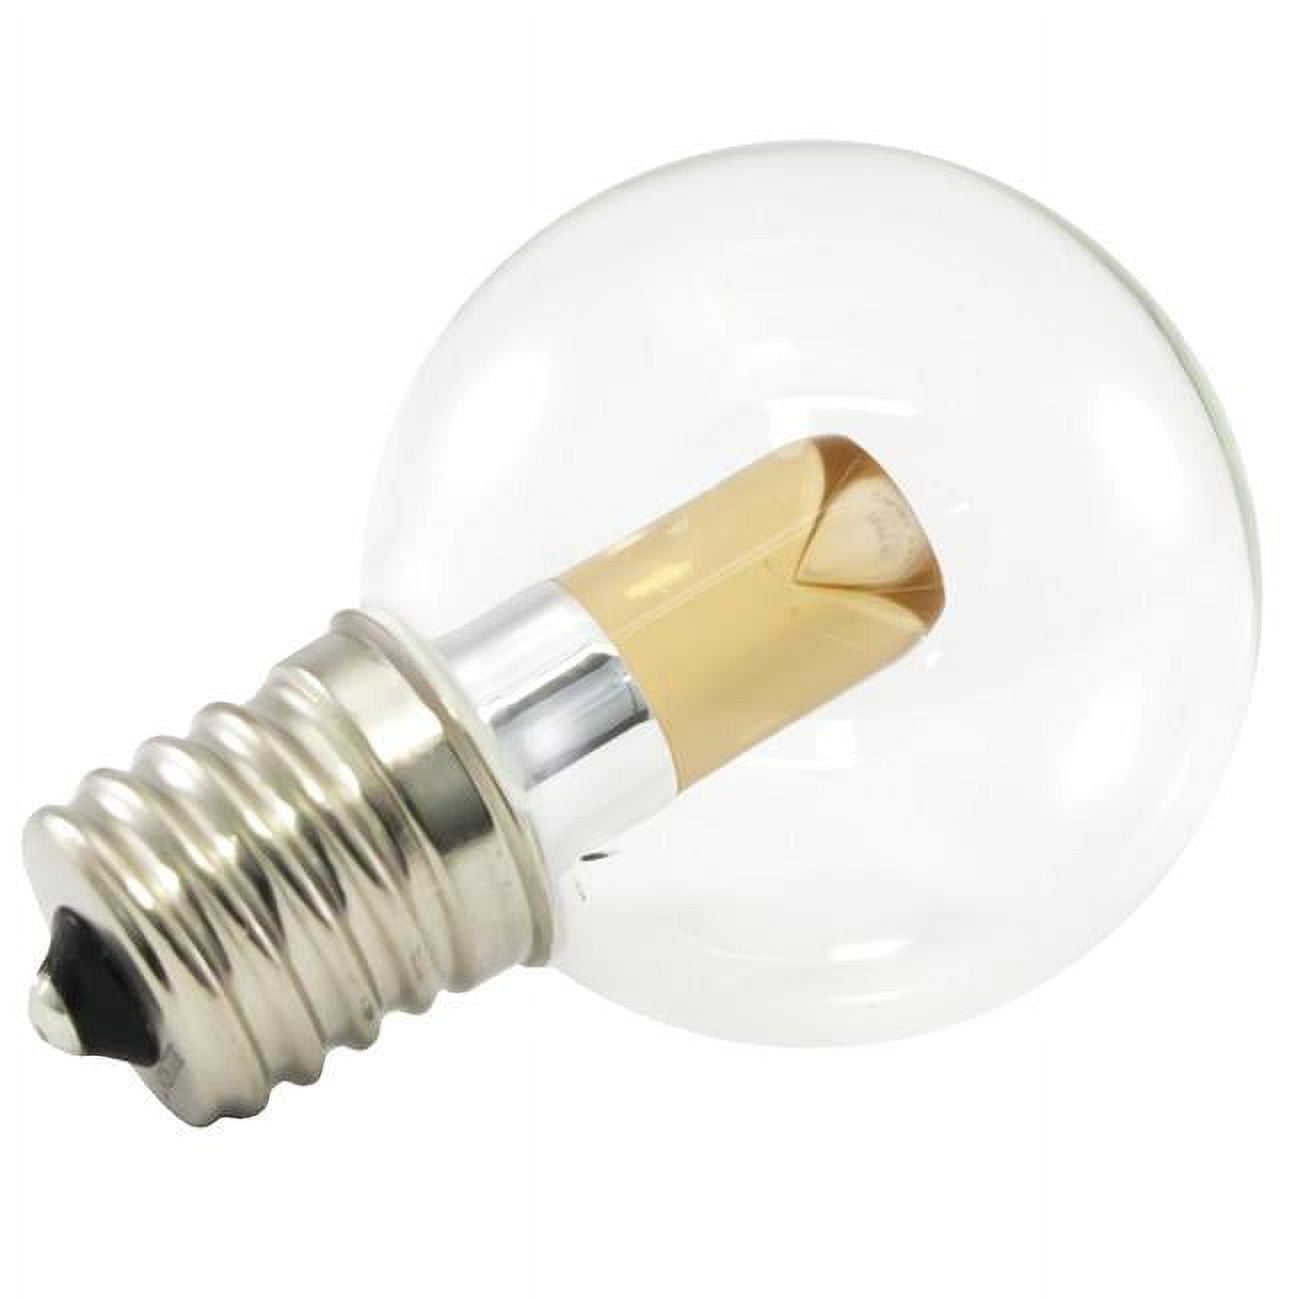 Picture of AmericanLighting PG40-E17-UWW Dimmable LED Globe Light Bulbs - 1 watt, 120 V - 2400K, Ultra Warm White